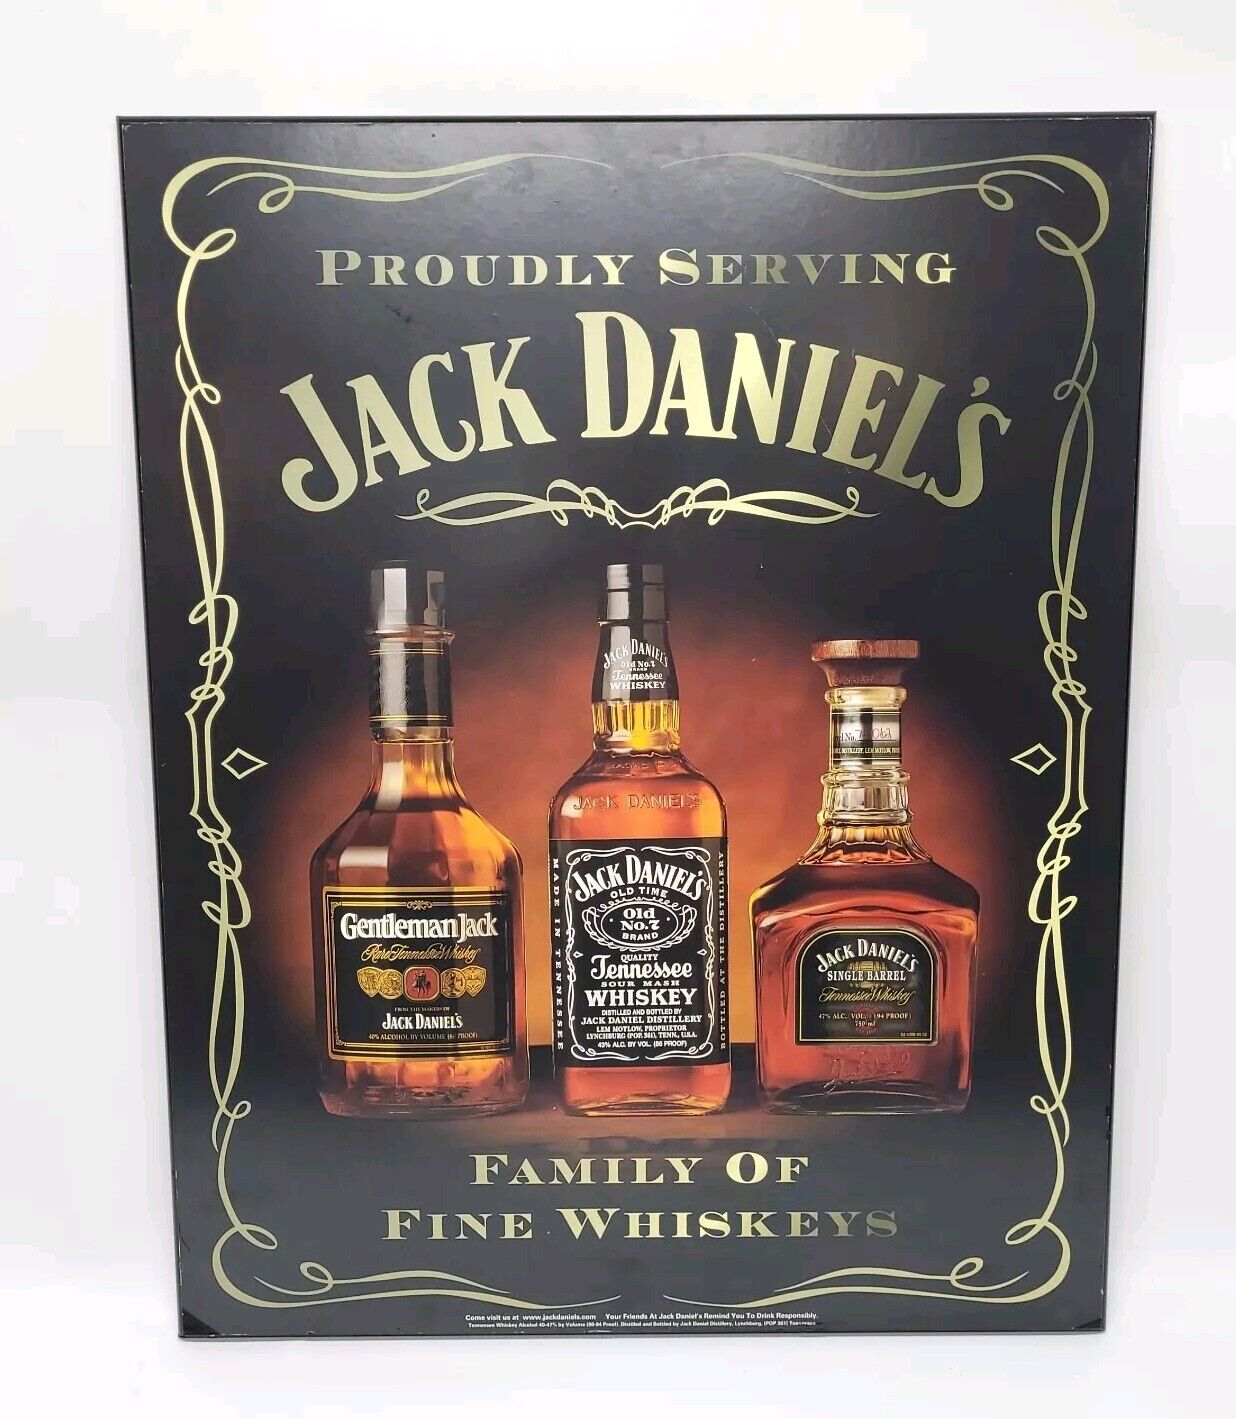 Vntg Jack Daniel's Wooden Bar Sign / Poster (Family of Fine Whiskeys)